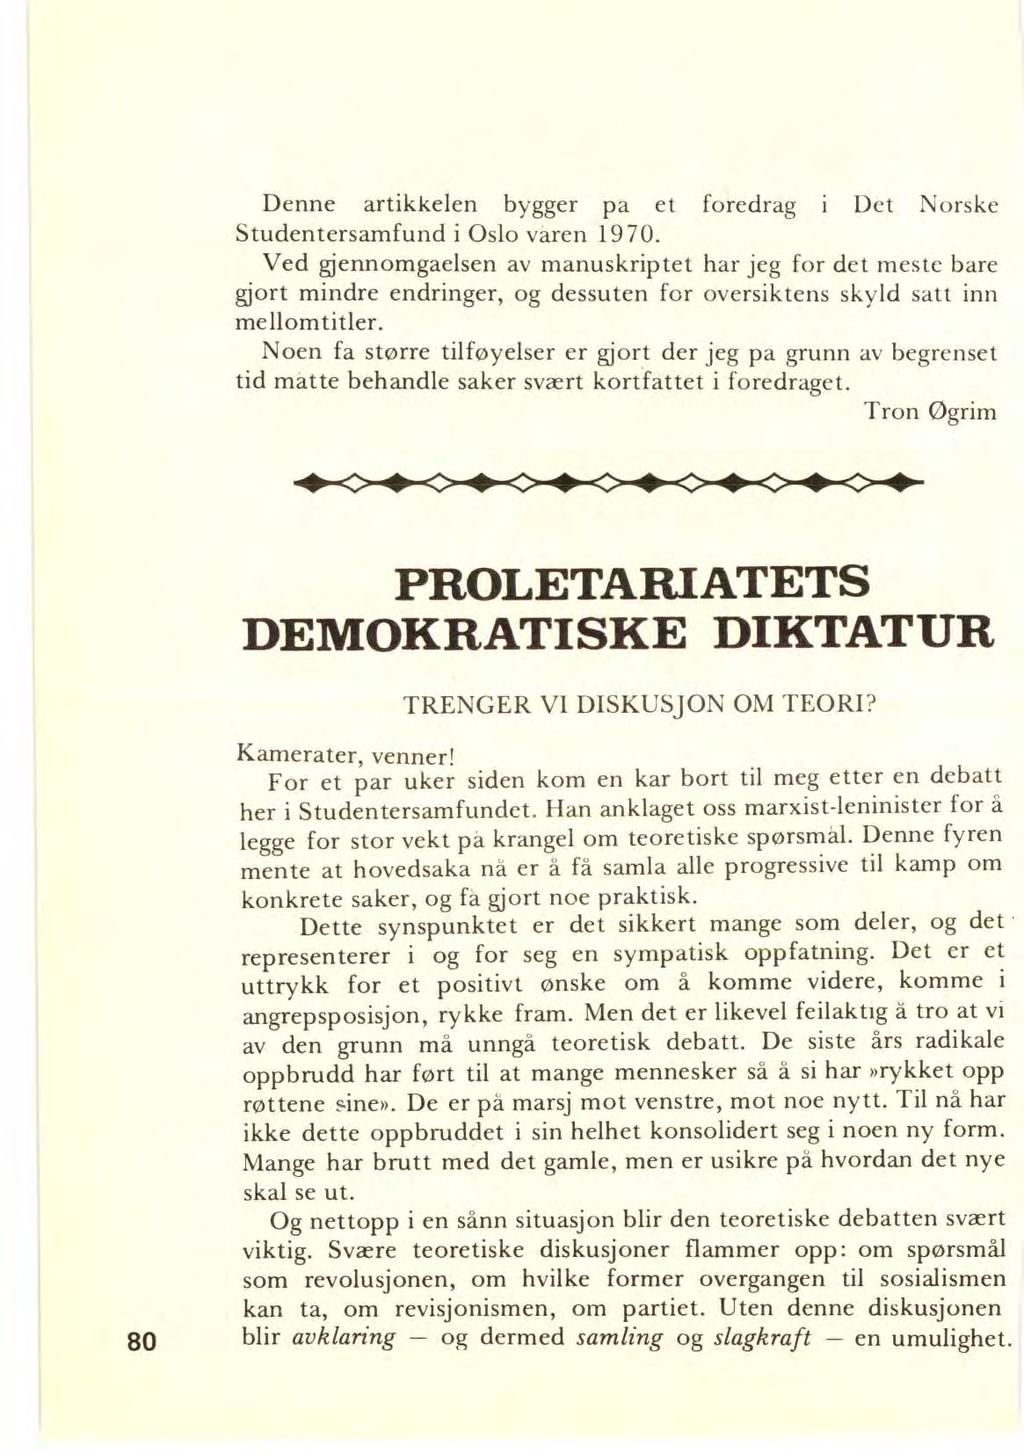 Denne artikkelen bygger pa et foredrag i Det Norske Studentersamfund i Oslo våren 1970.